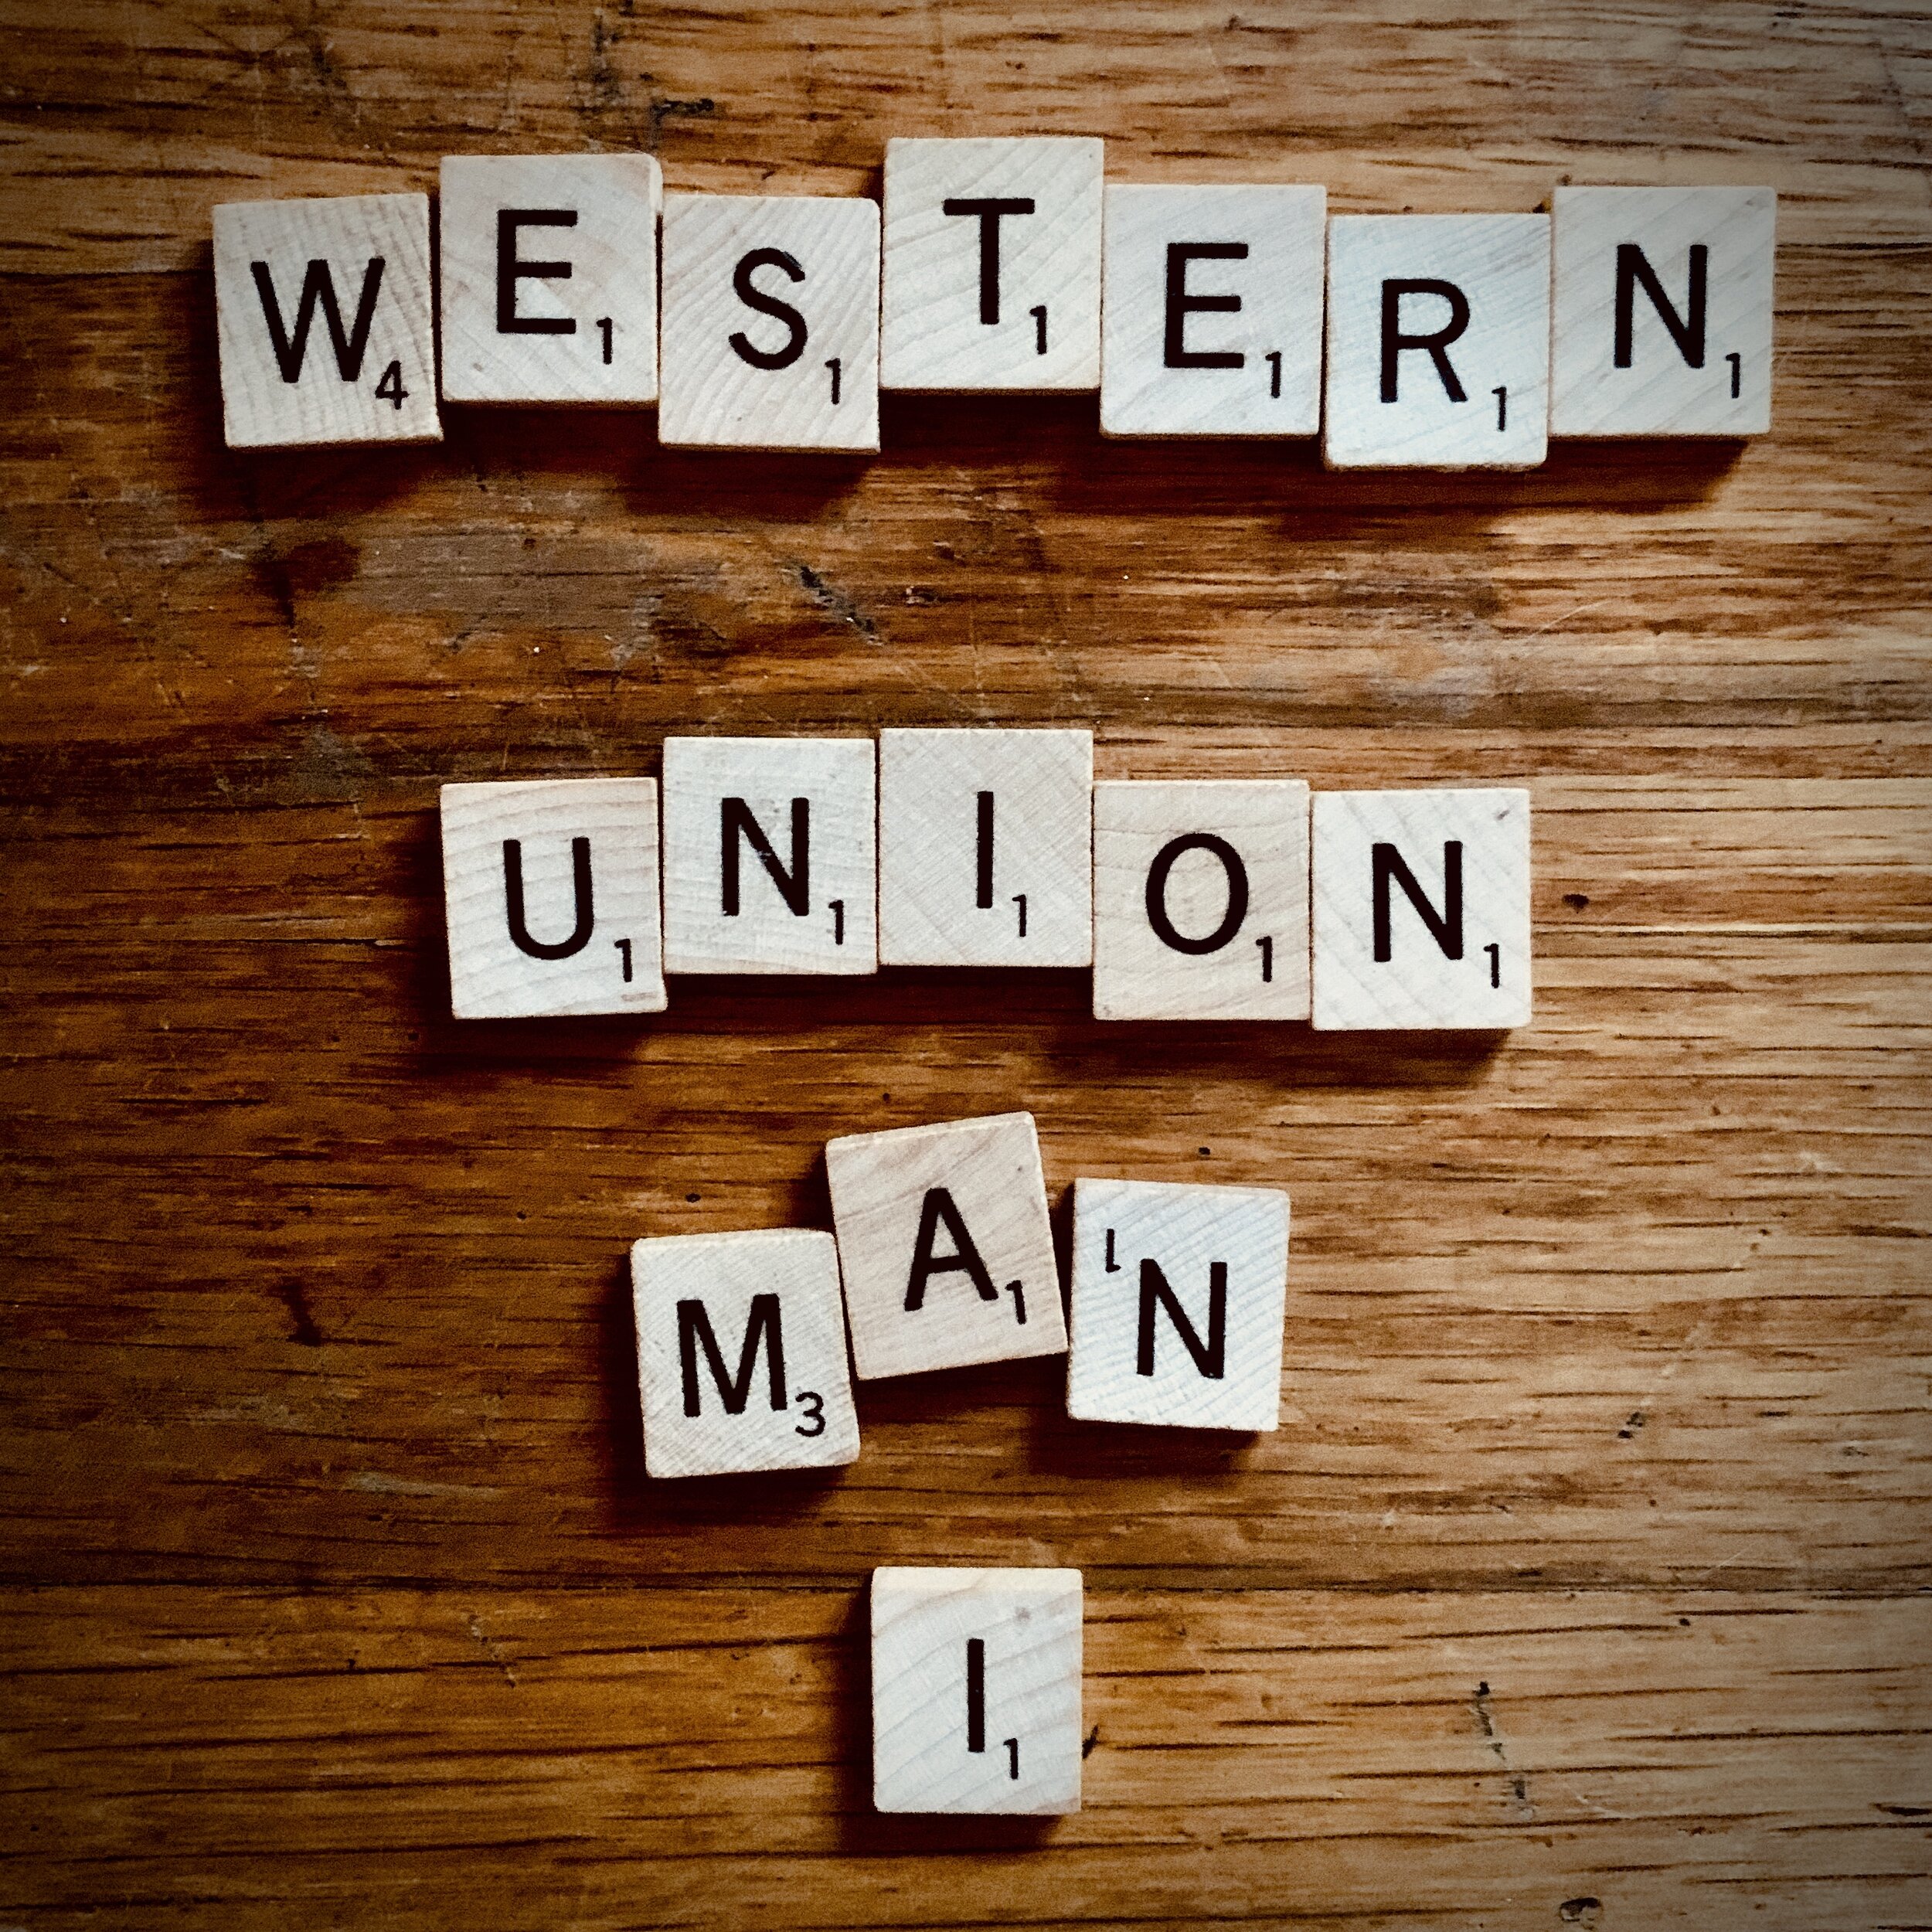 Western Union Man I